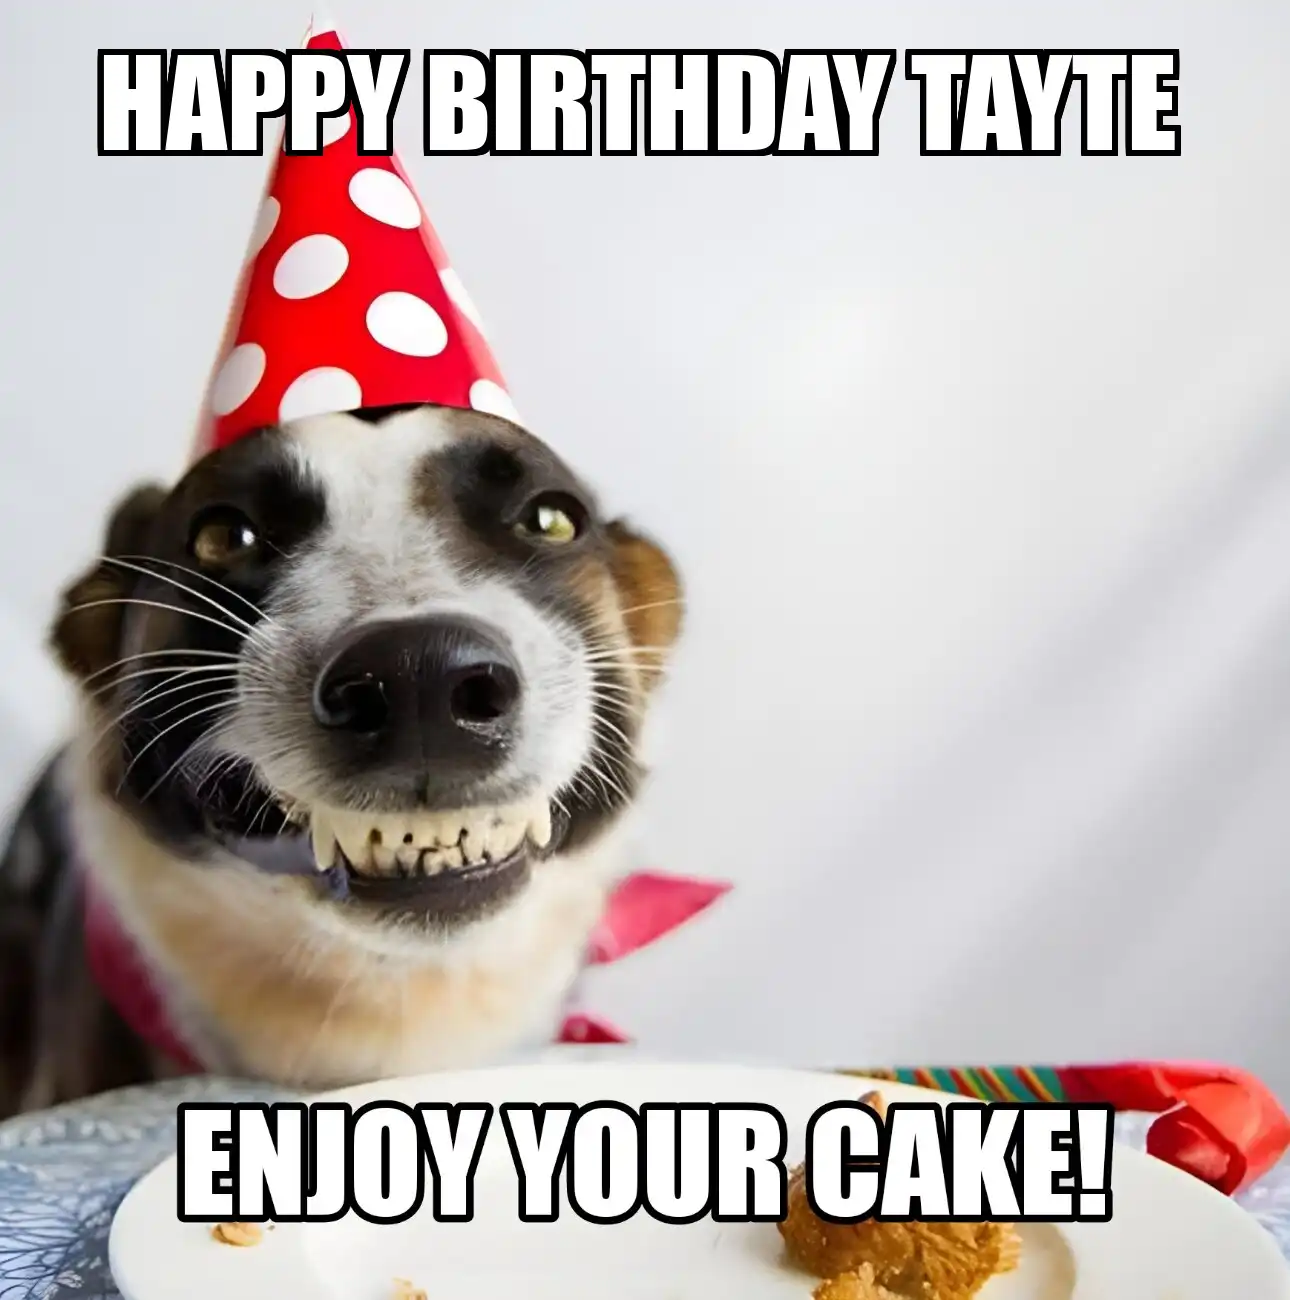 Happy Birthday Tayte Enjoy Your Cake Dog Meme